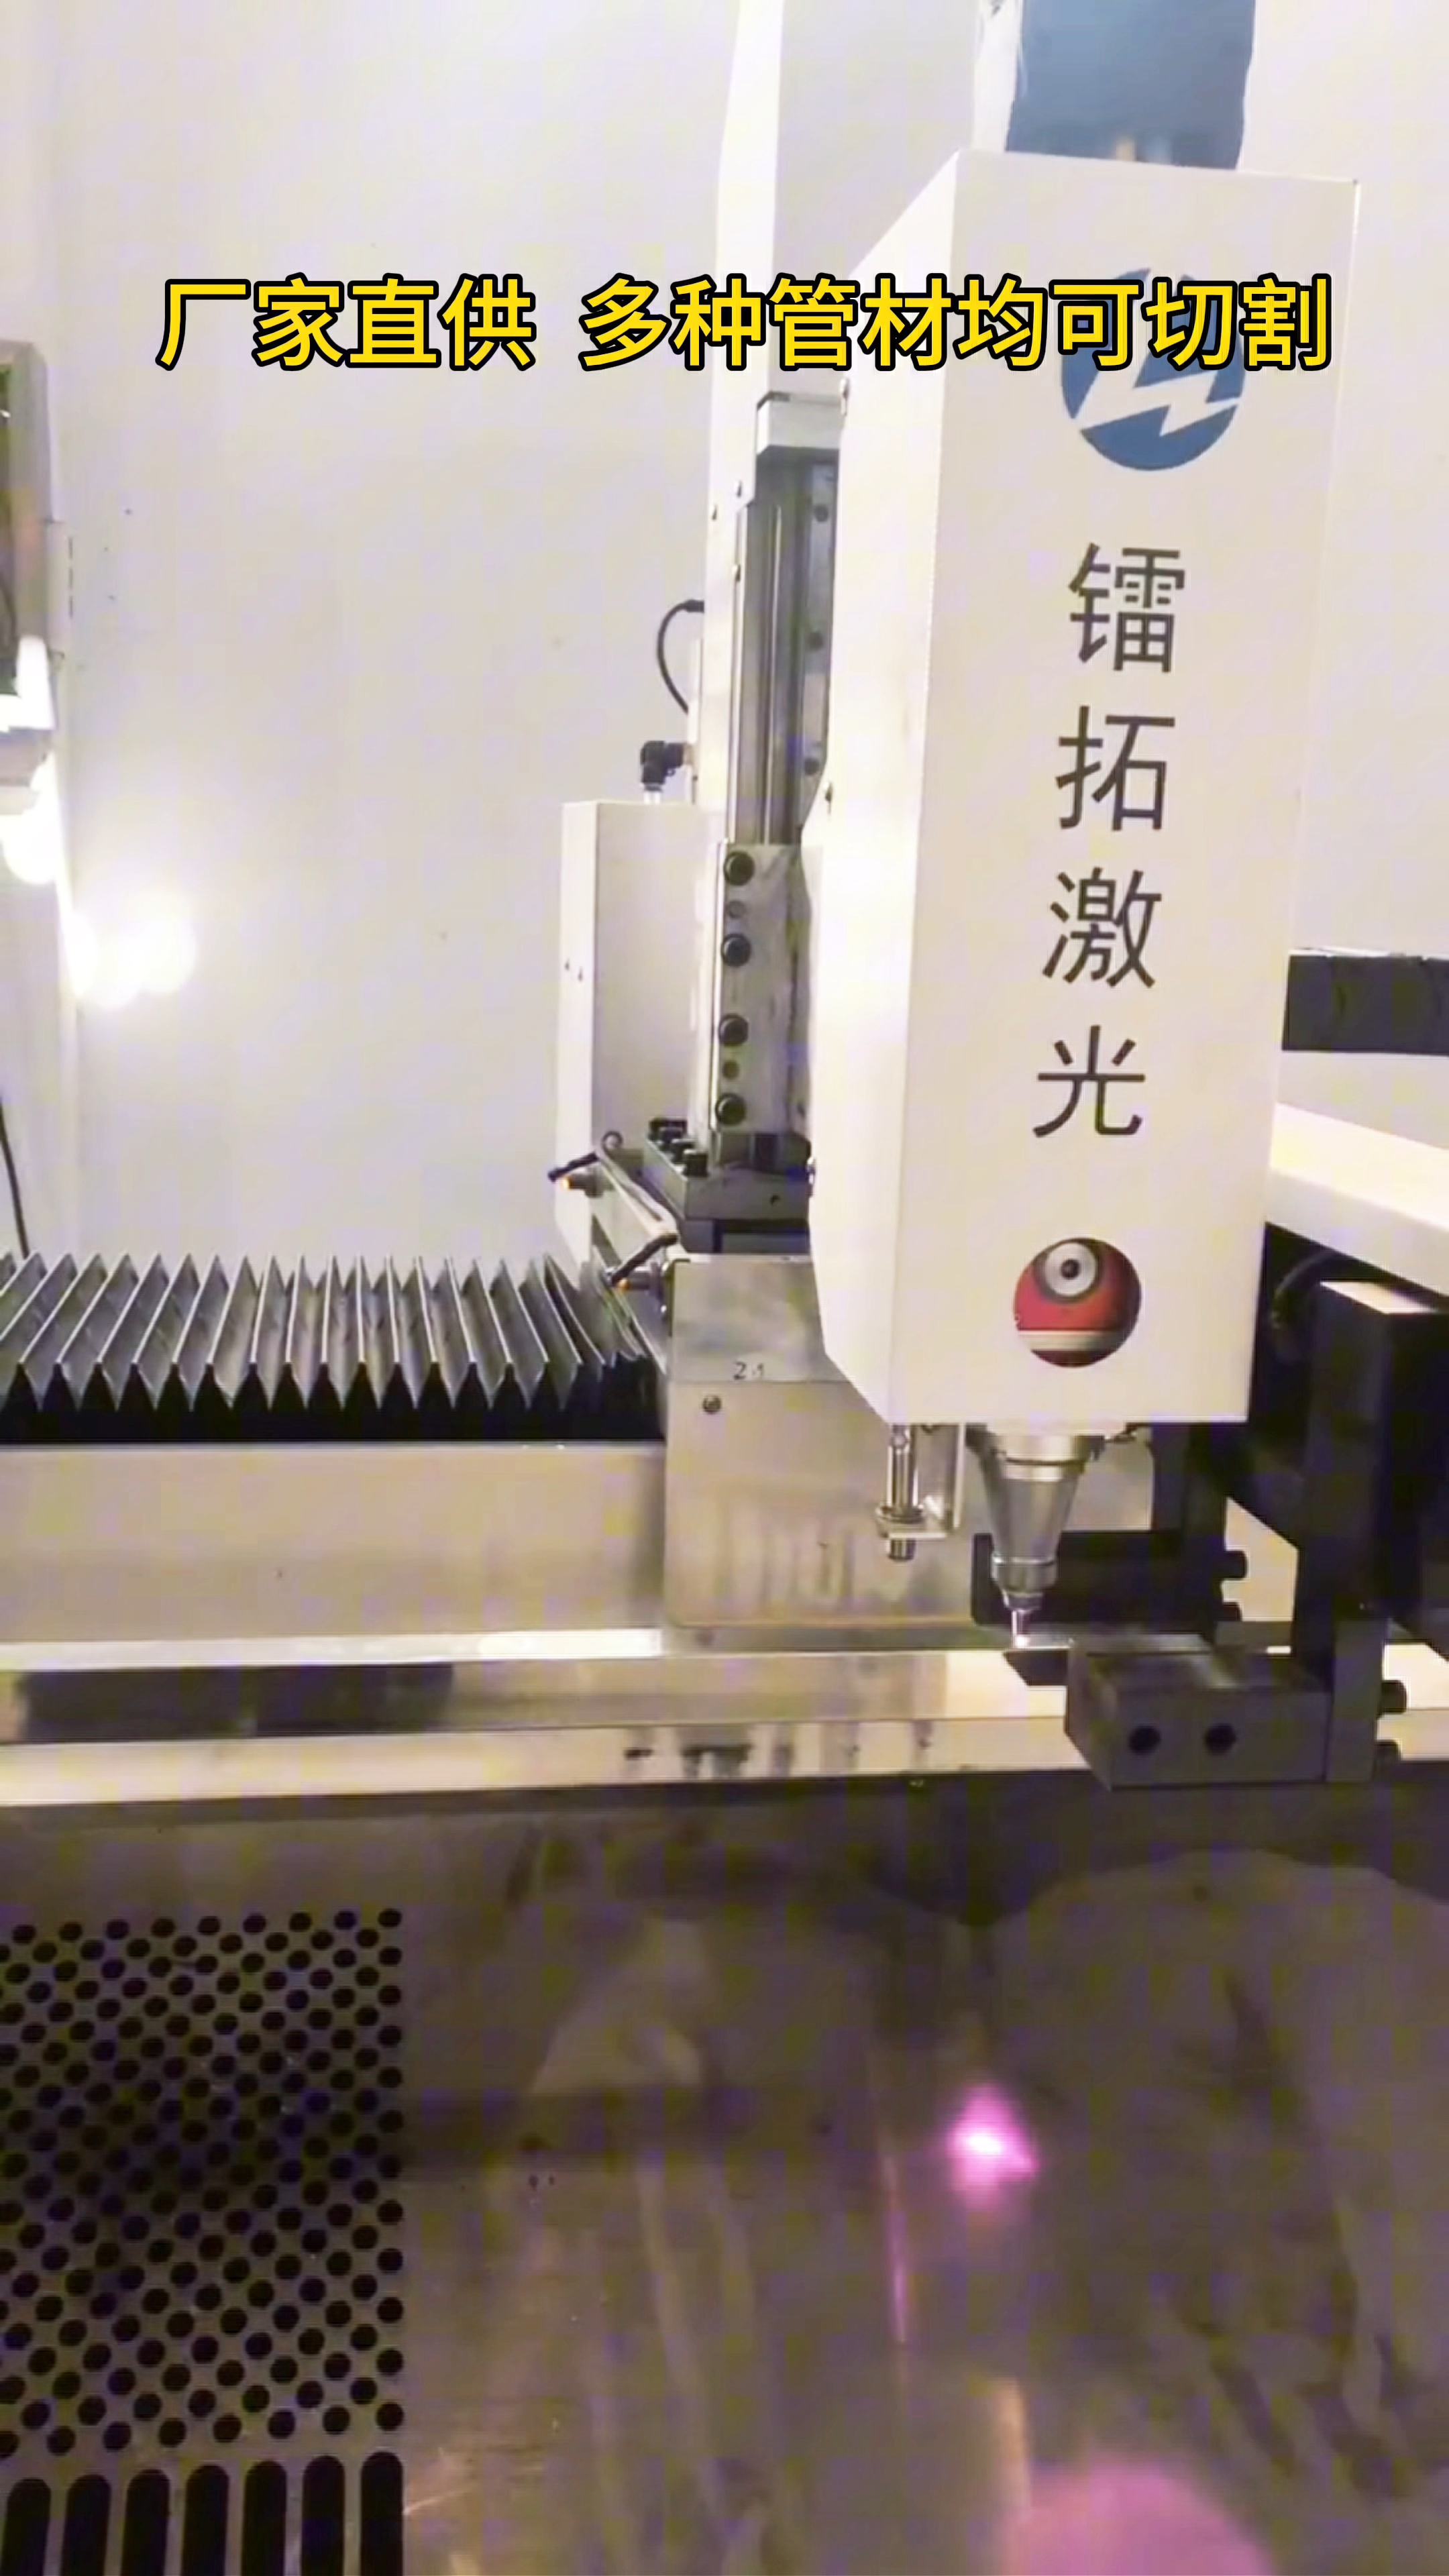 镭拓管材激光切割机 定制未来制造的智能利器#管材激光切割机#不锈钢激光切割机#激光切割机#